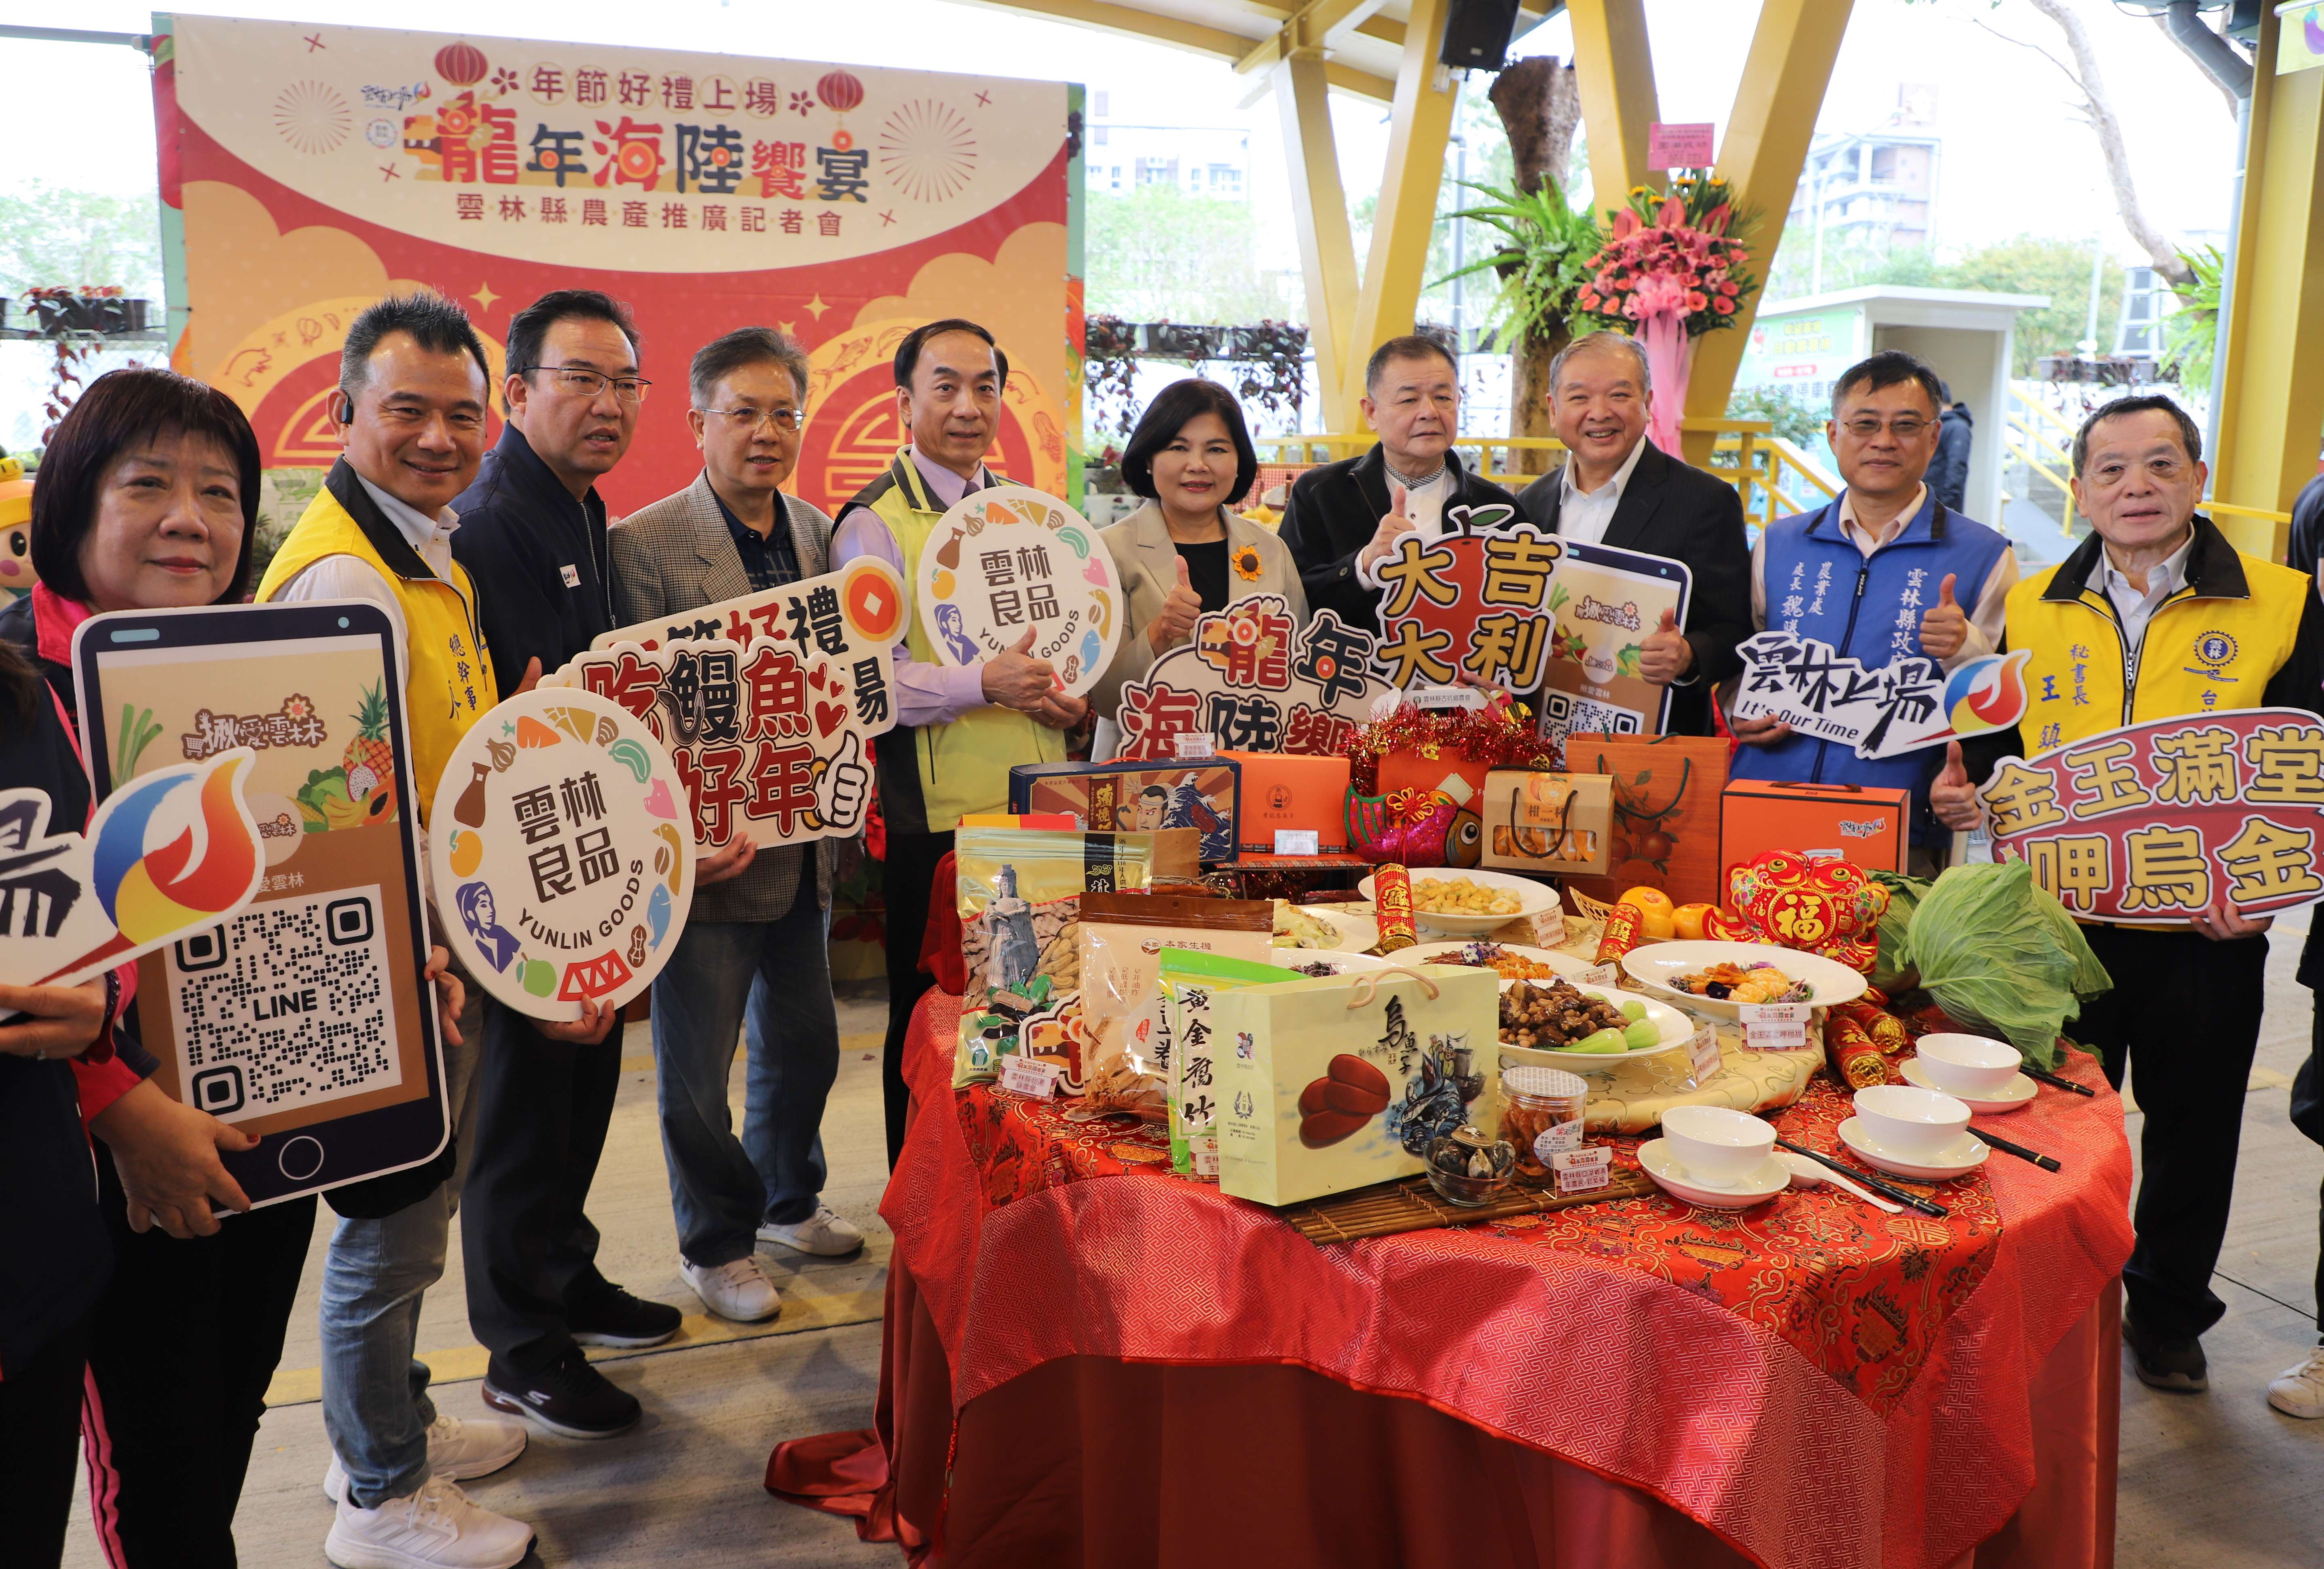 雲林縣政府於台北市希望廣場行銷雲林農產。